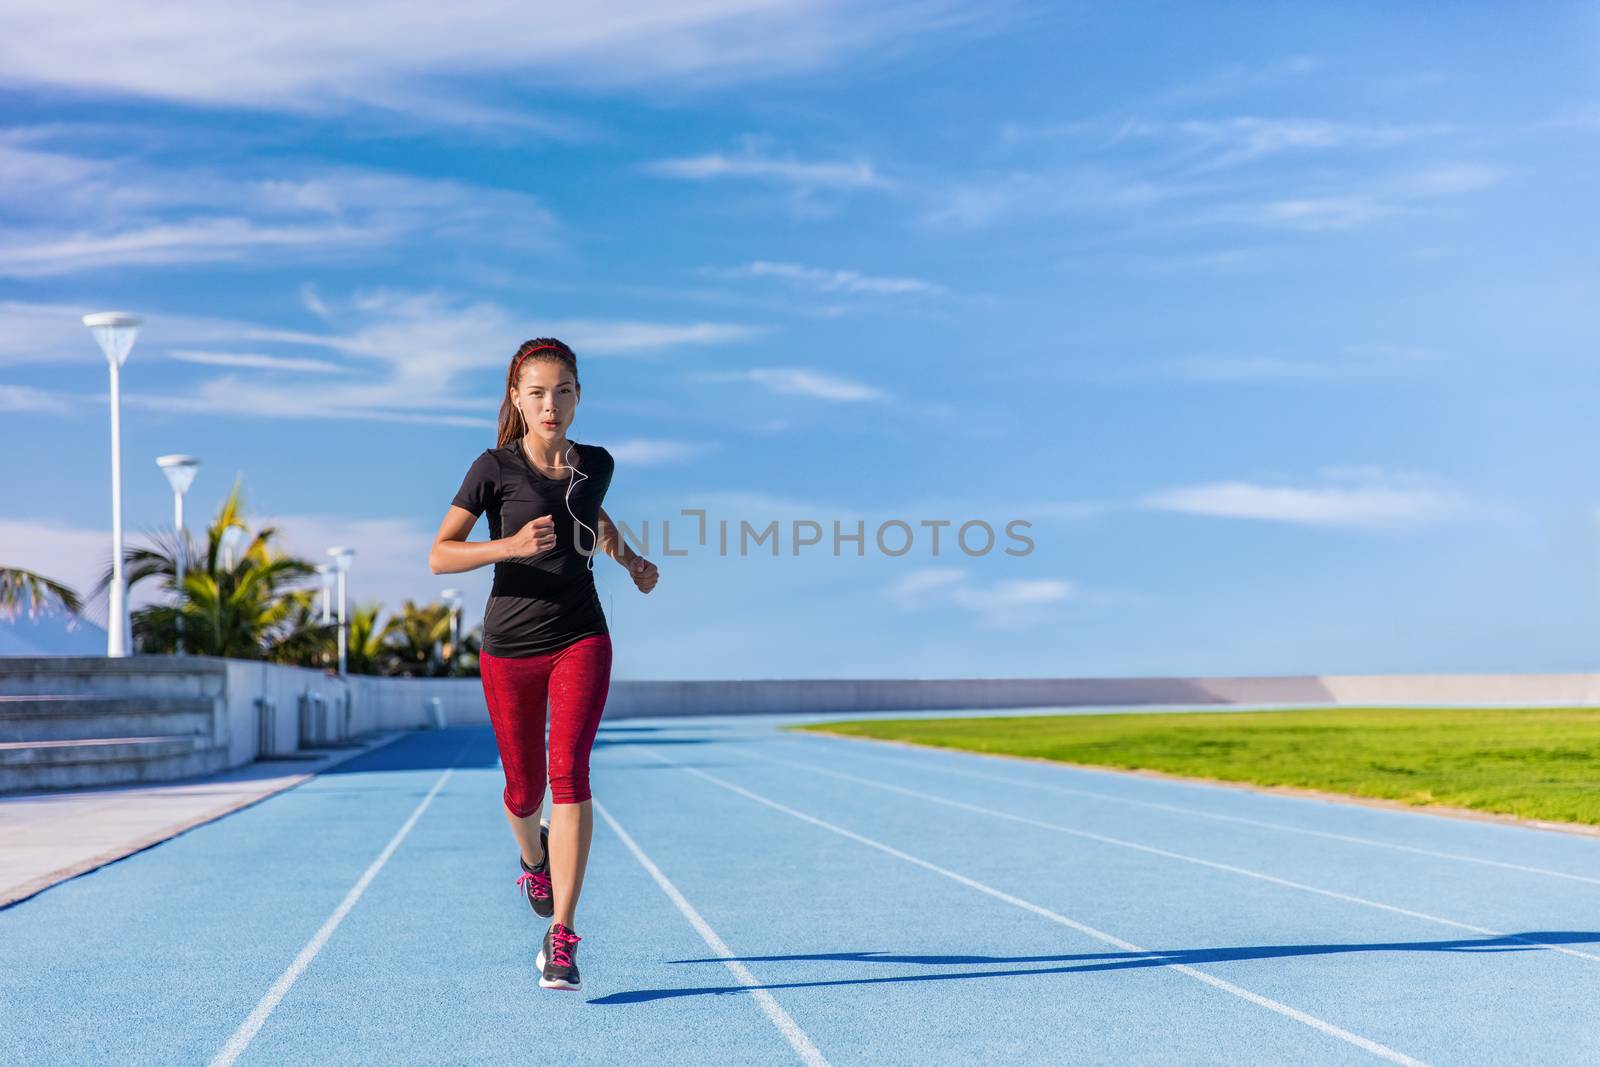 Athlete runner running on outdoor stadium tracks by Maridav